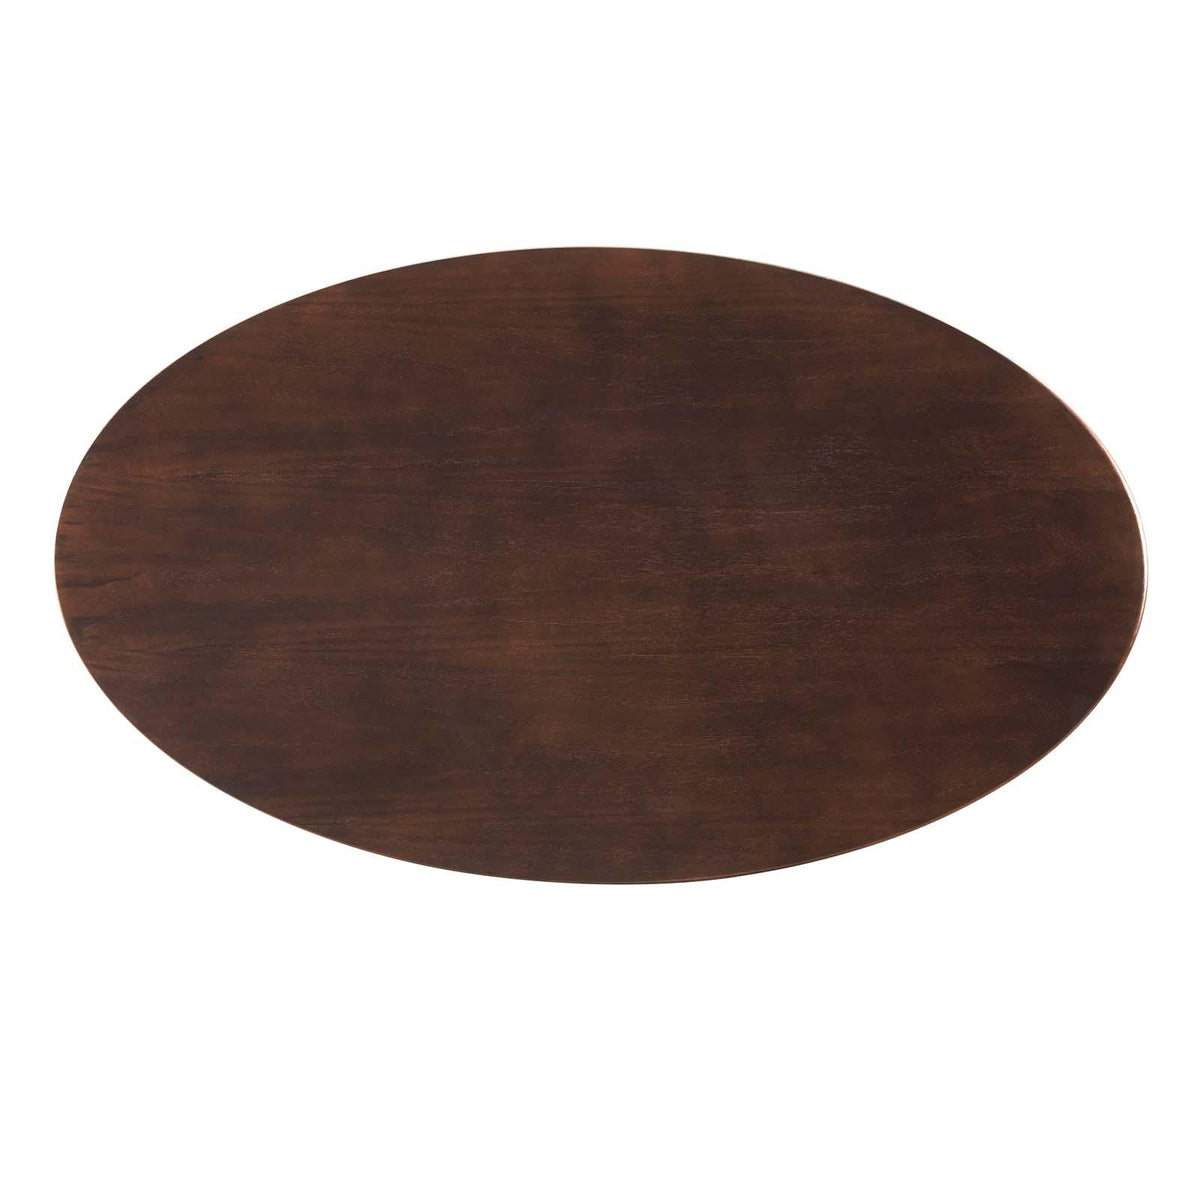 Modway Furniture Modern Lippa 48" Oval Coffee Table - EEI-5189